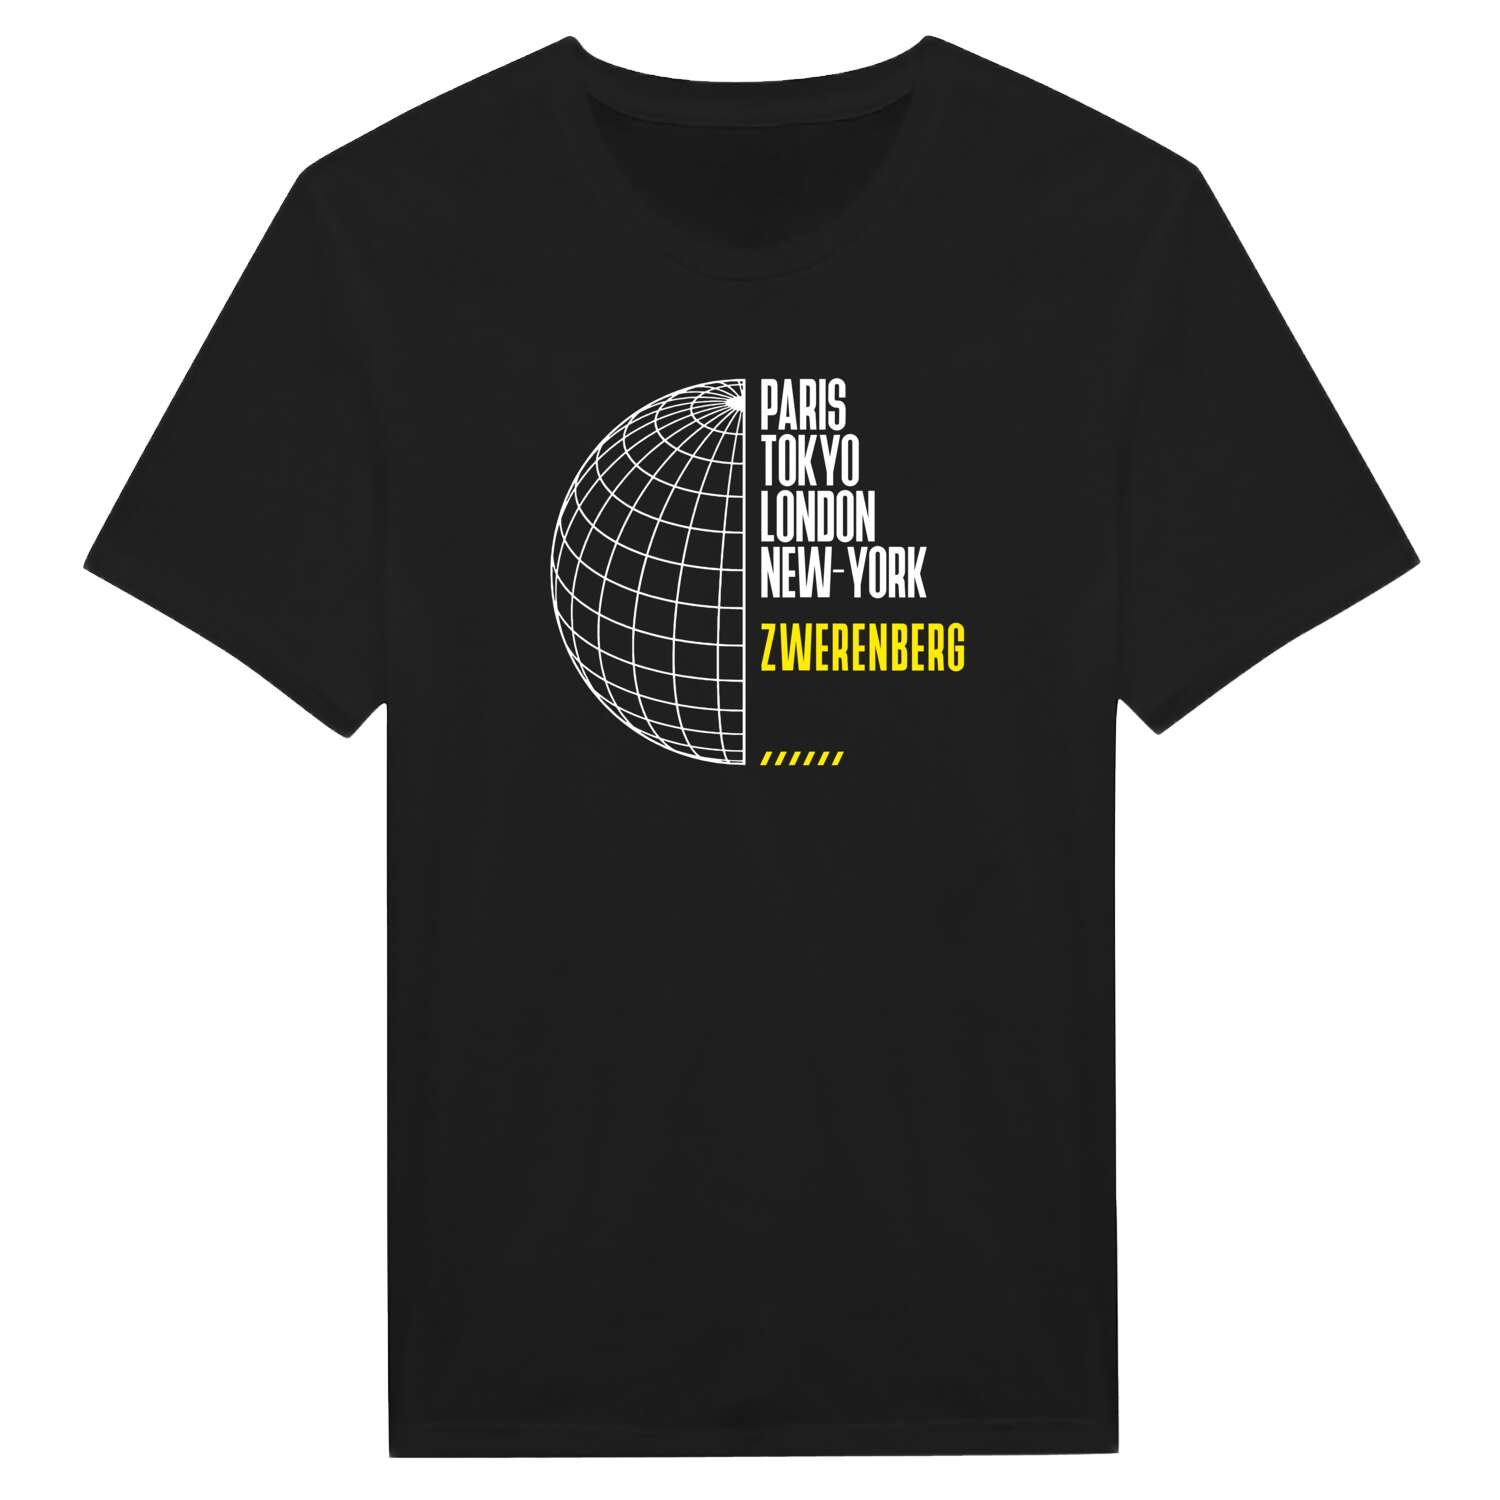 Zwerenberg T-Shirt »Paris Tokyo London«